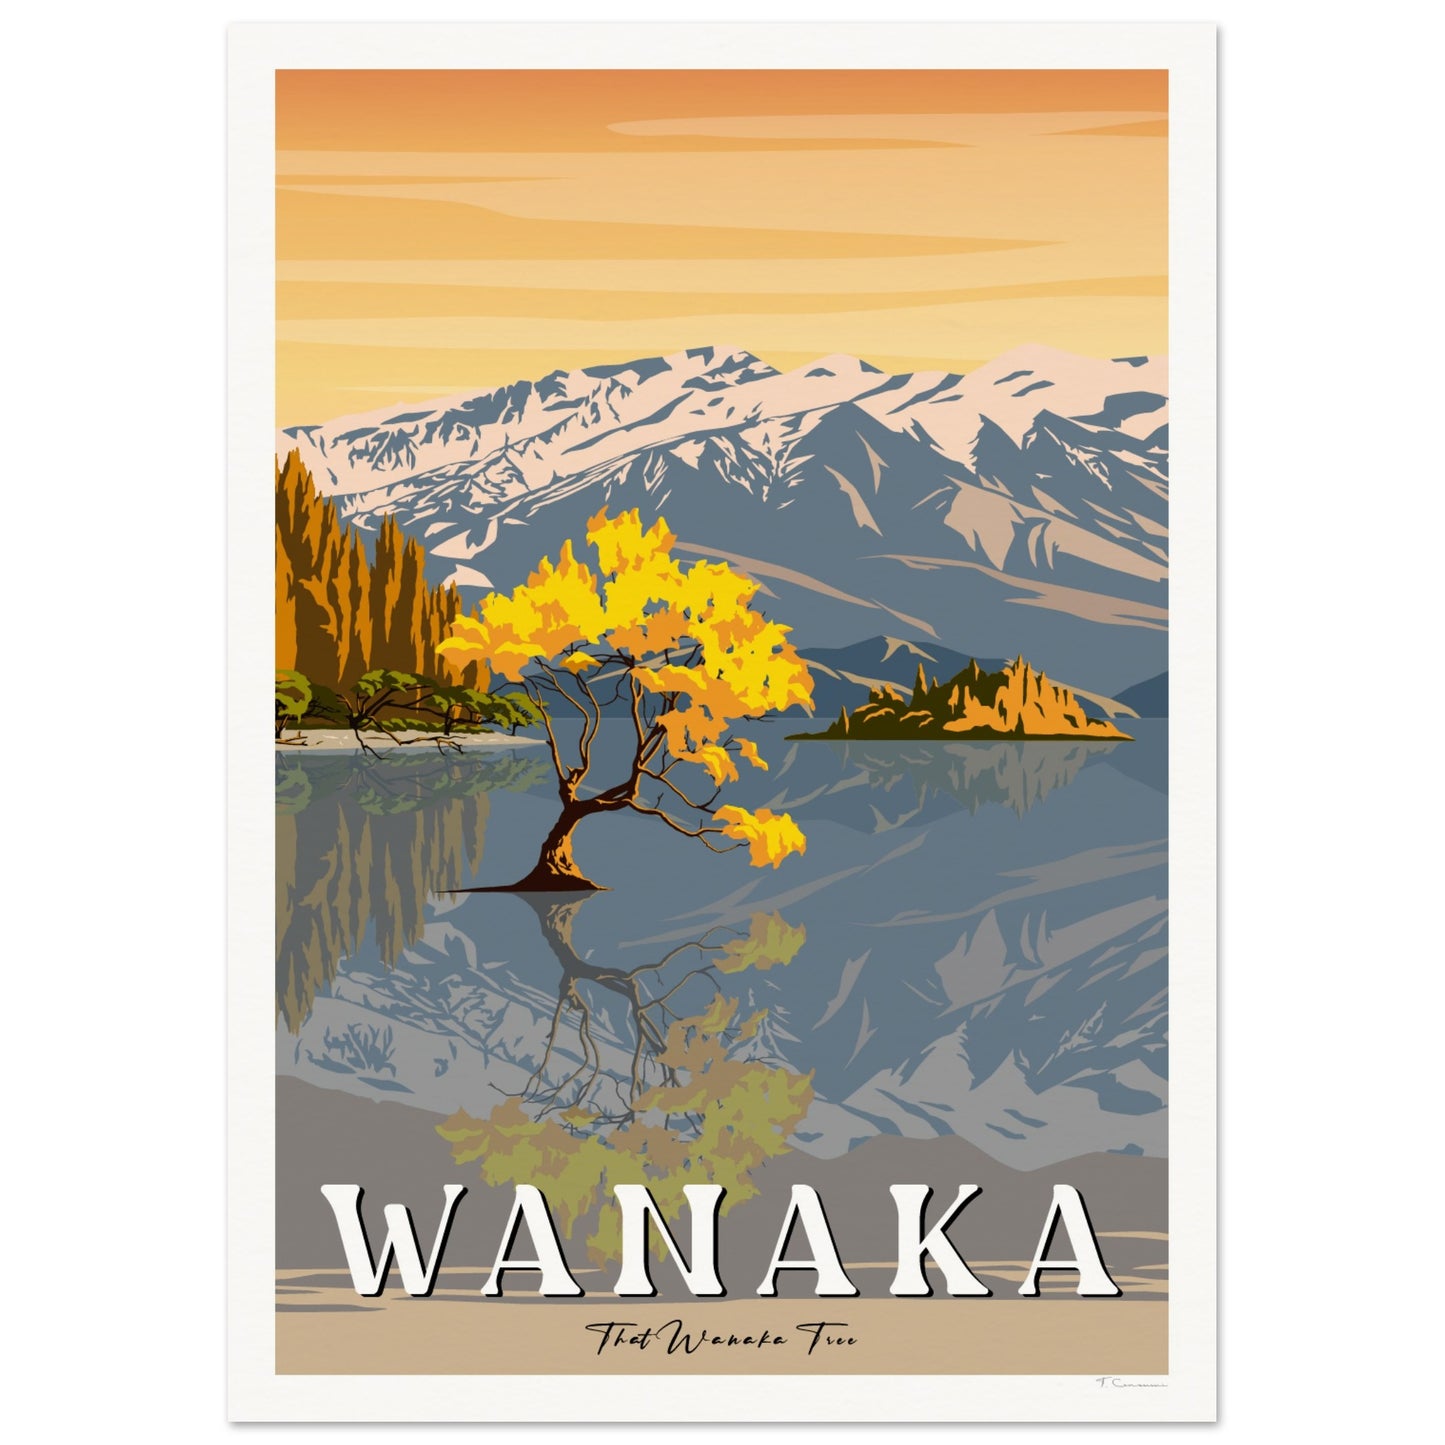 That Wanaka Tree - Wanaka - Travel Poster, New Zealand